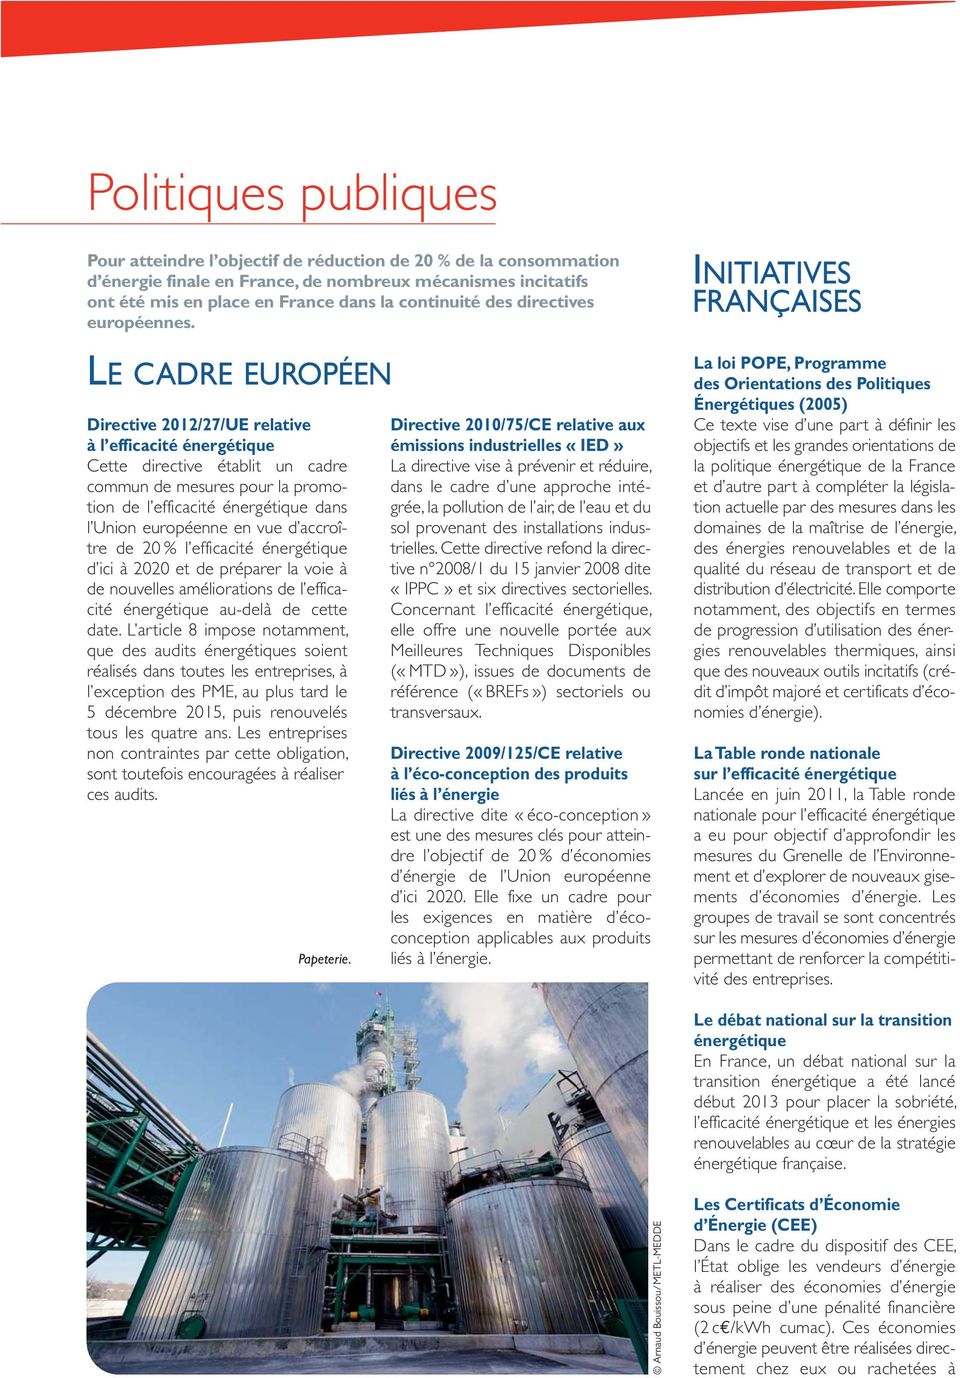 LE CADRE EUROPÉEN Directive 2012/27/UE relative à l efficacité énergétique Cette directive établit un cadre commun de mesures pour la promotion de l efficacité énergétique dans l Union européenne en